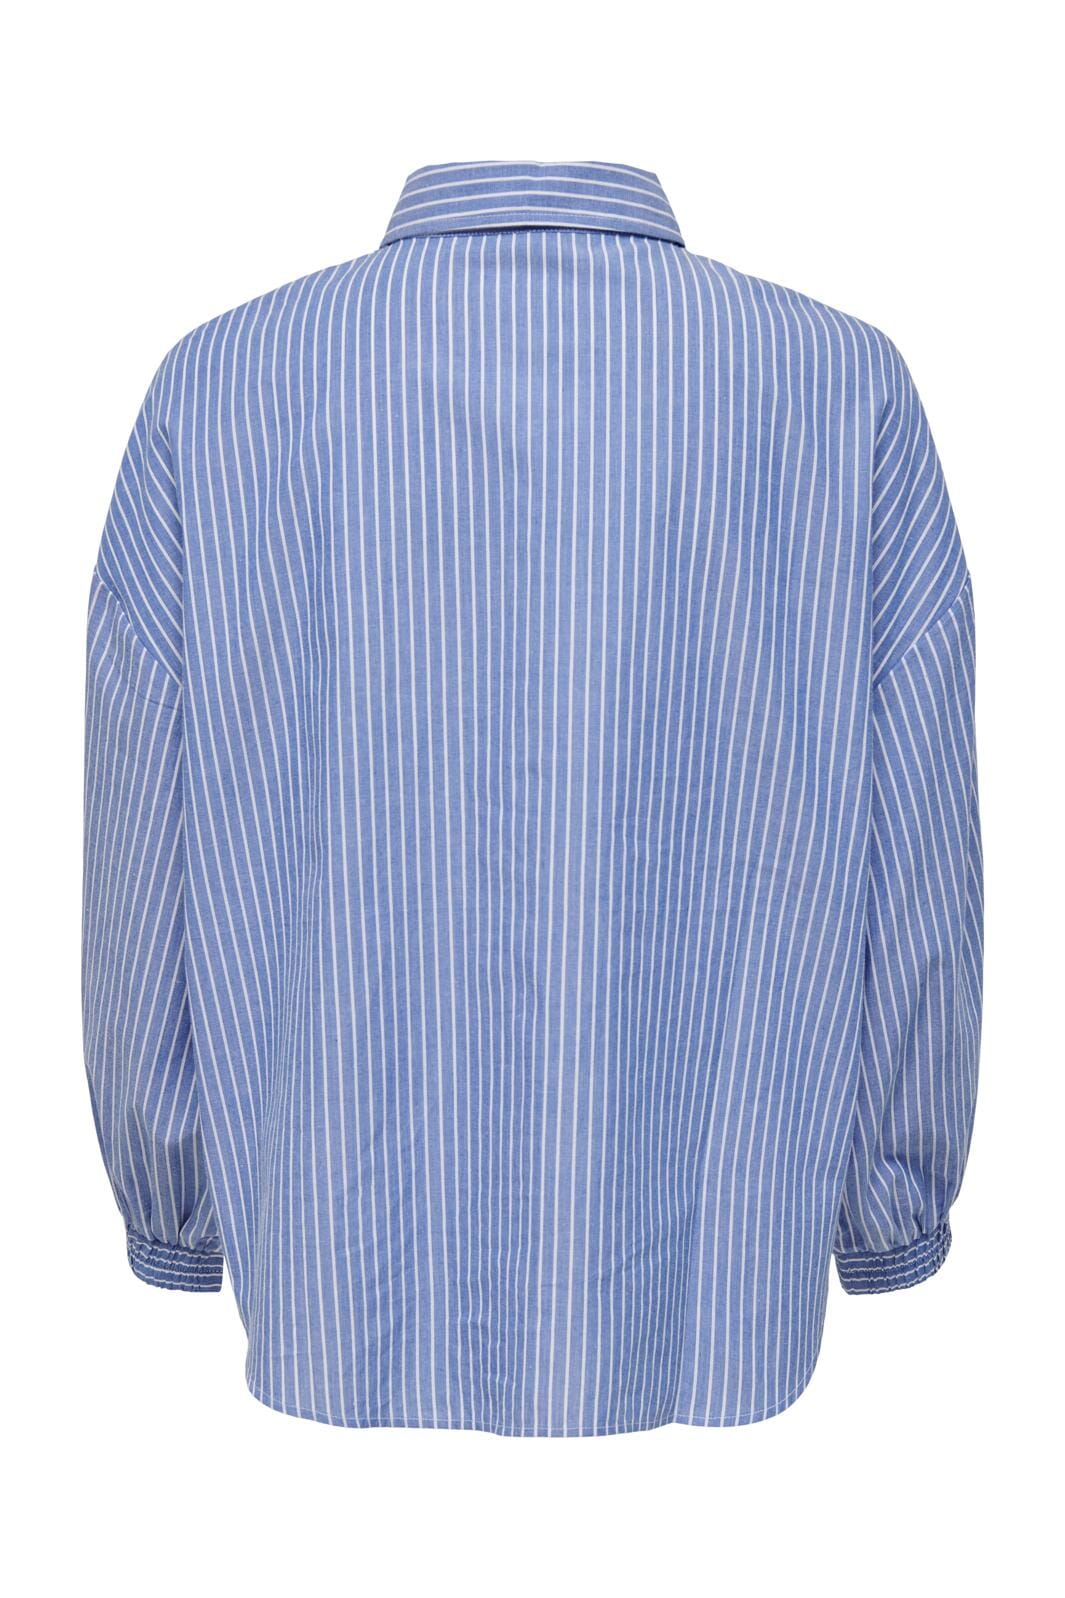 Only - Onlarja L/S Stripe Shirt - 4018597 Infinity Cd Stripes